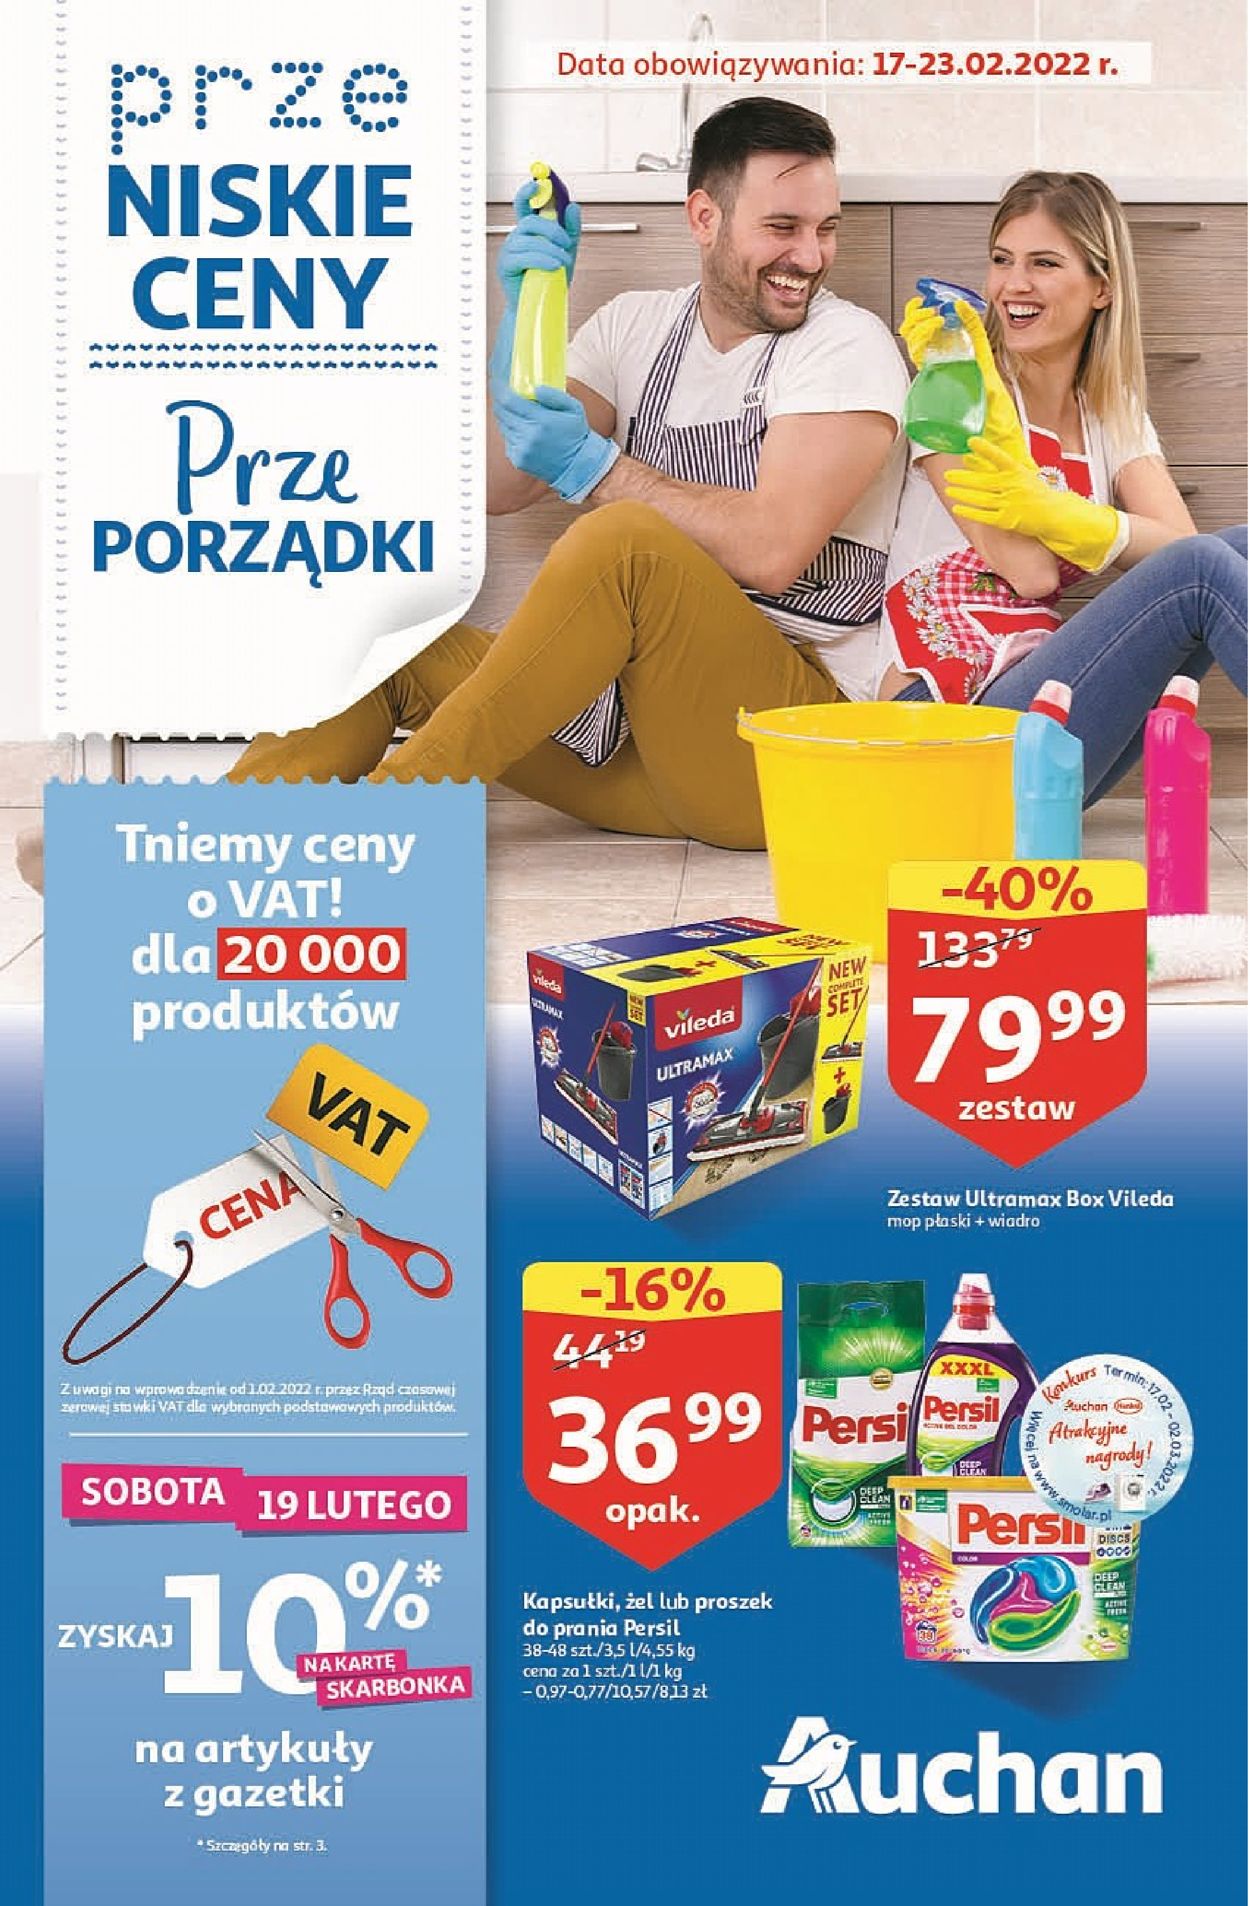 Auchan Gazetka od 17.02.2022